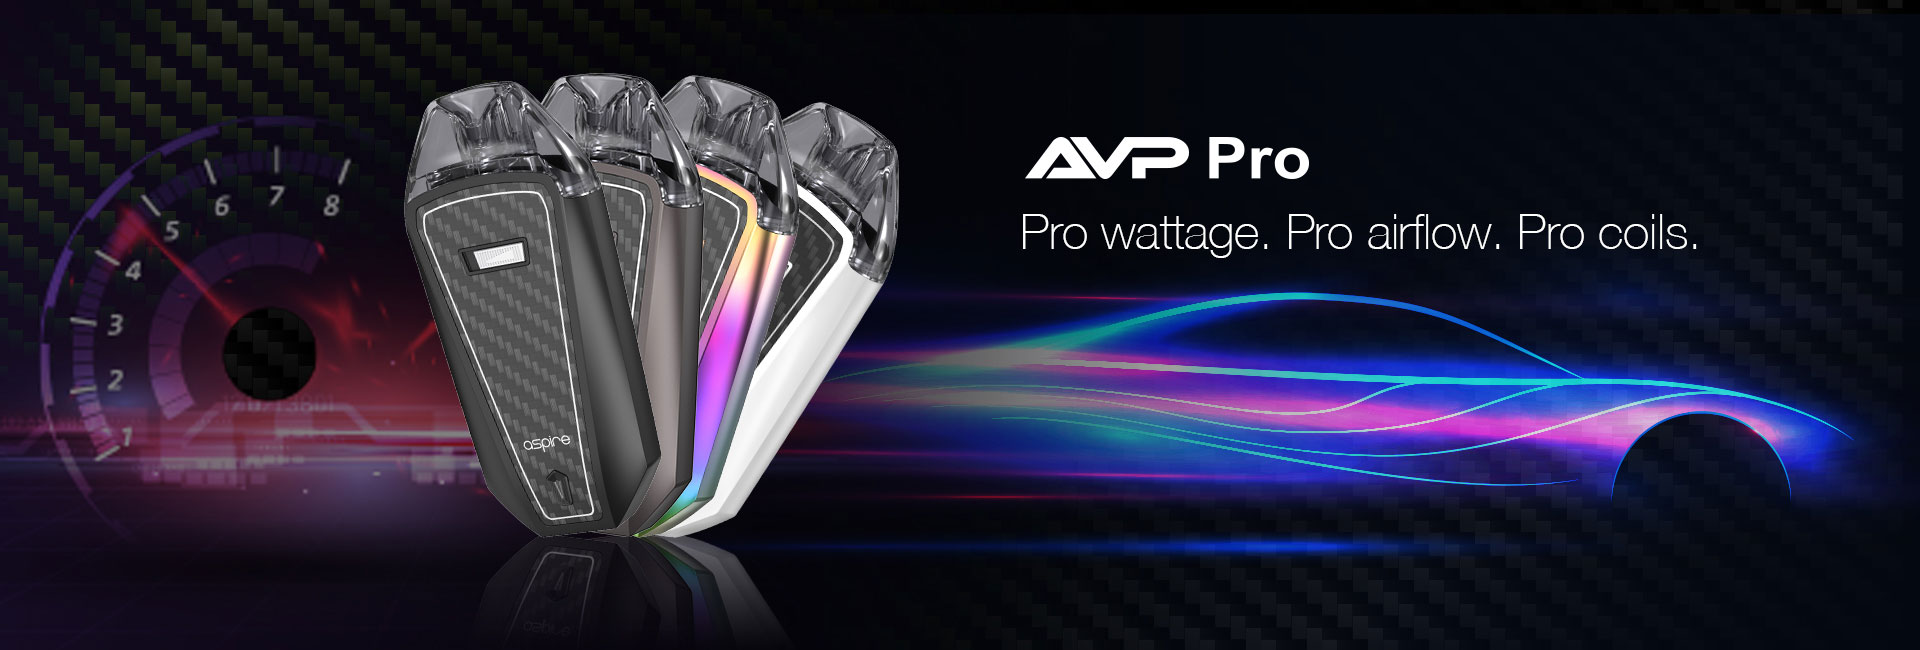 Aspire AVP Pro Kit